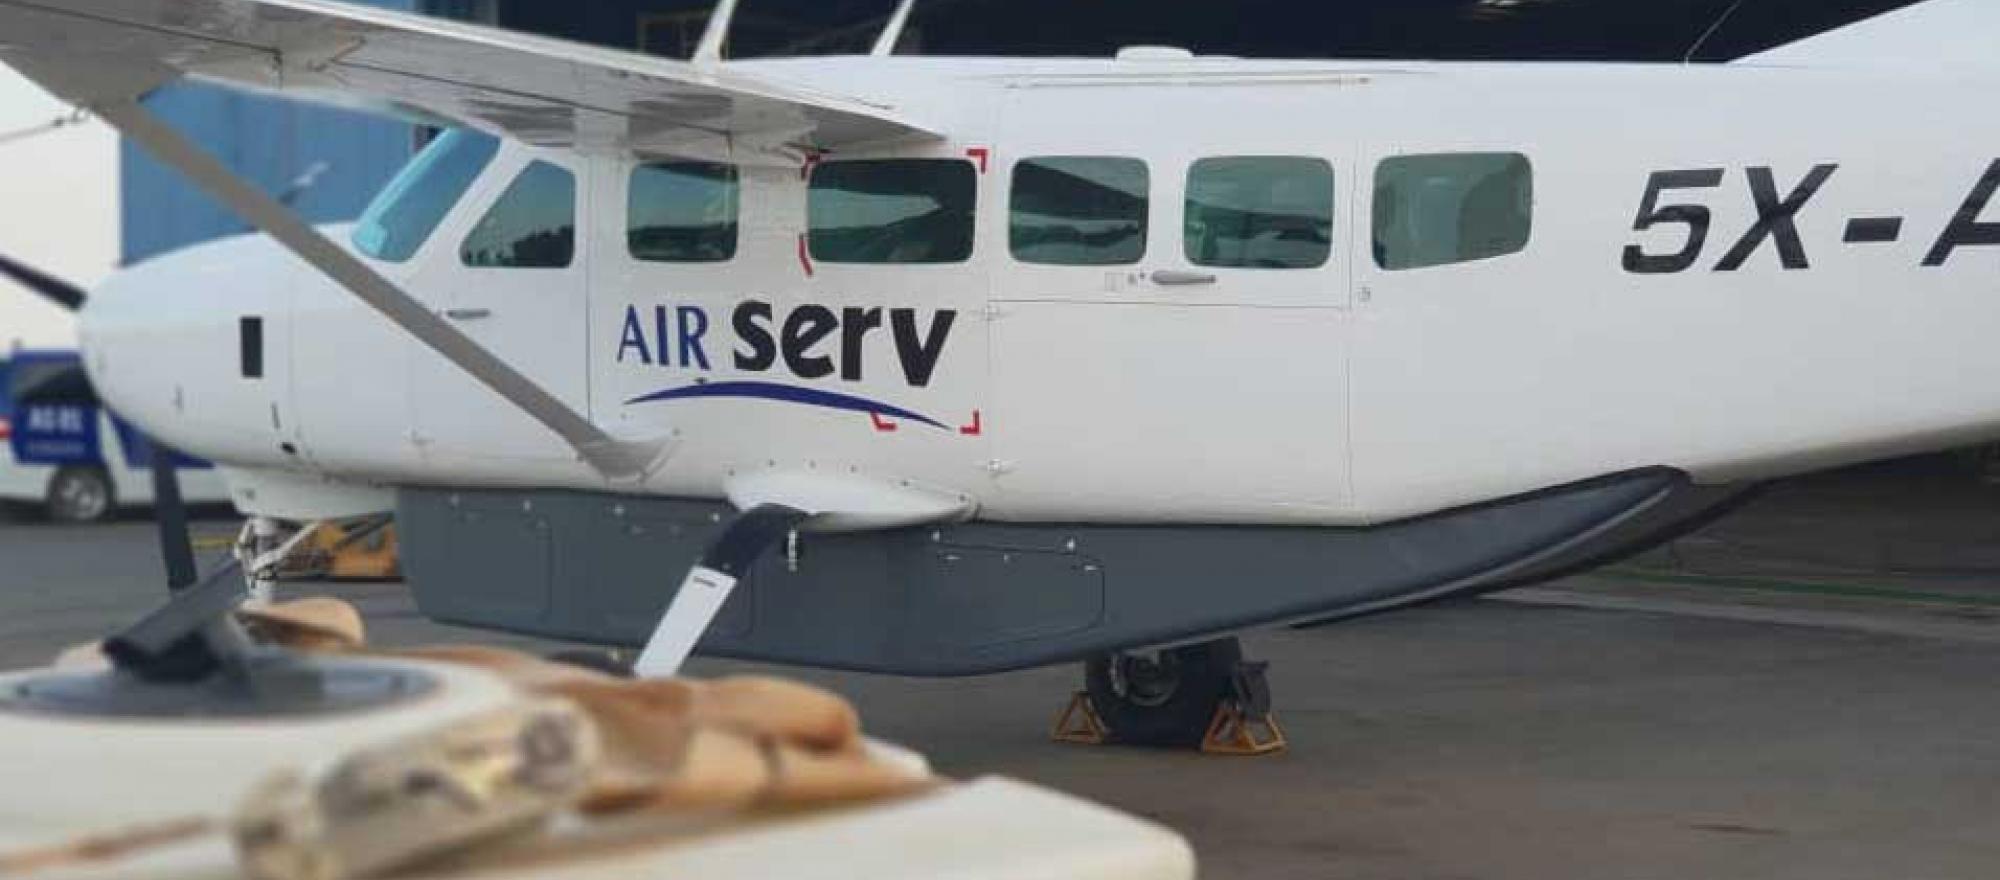 ir Serv's Cessna Caravan